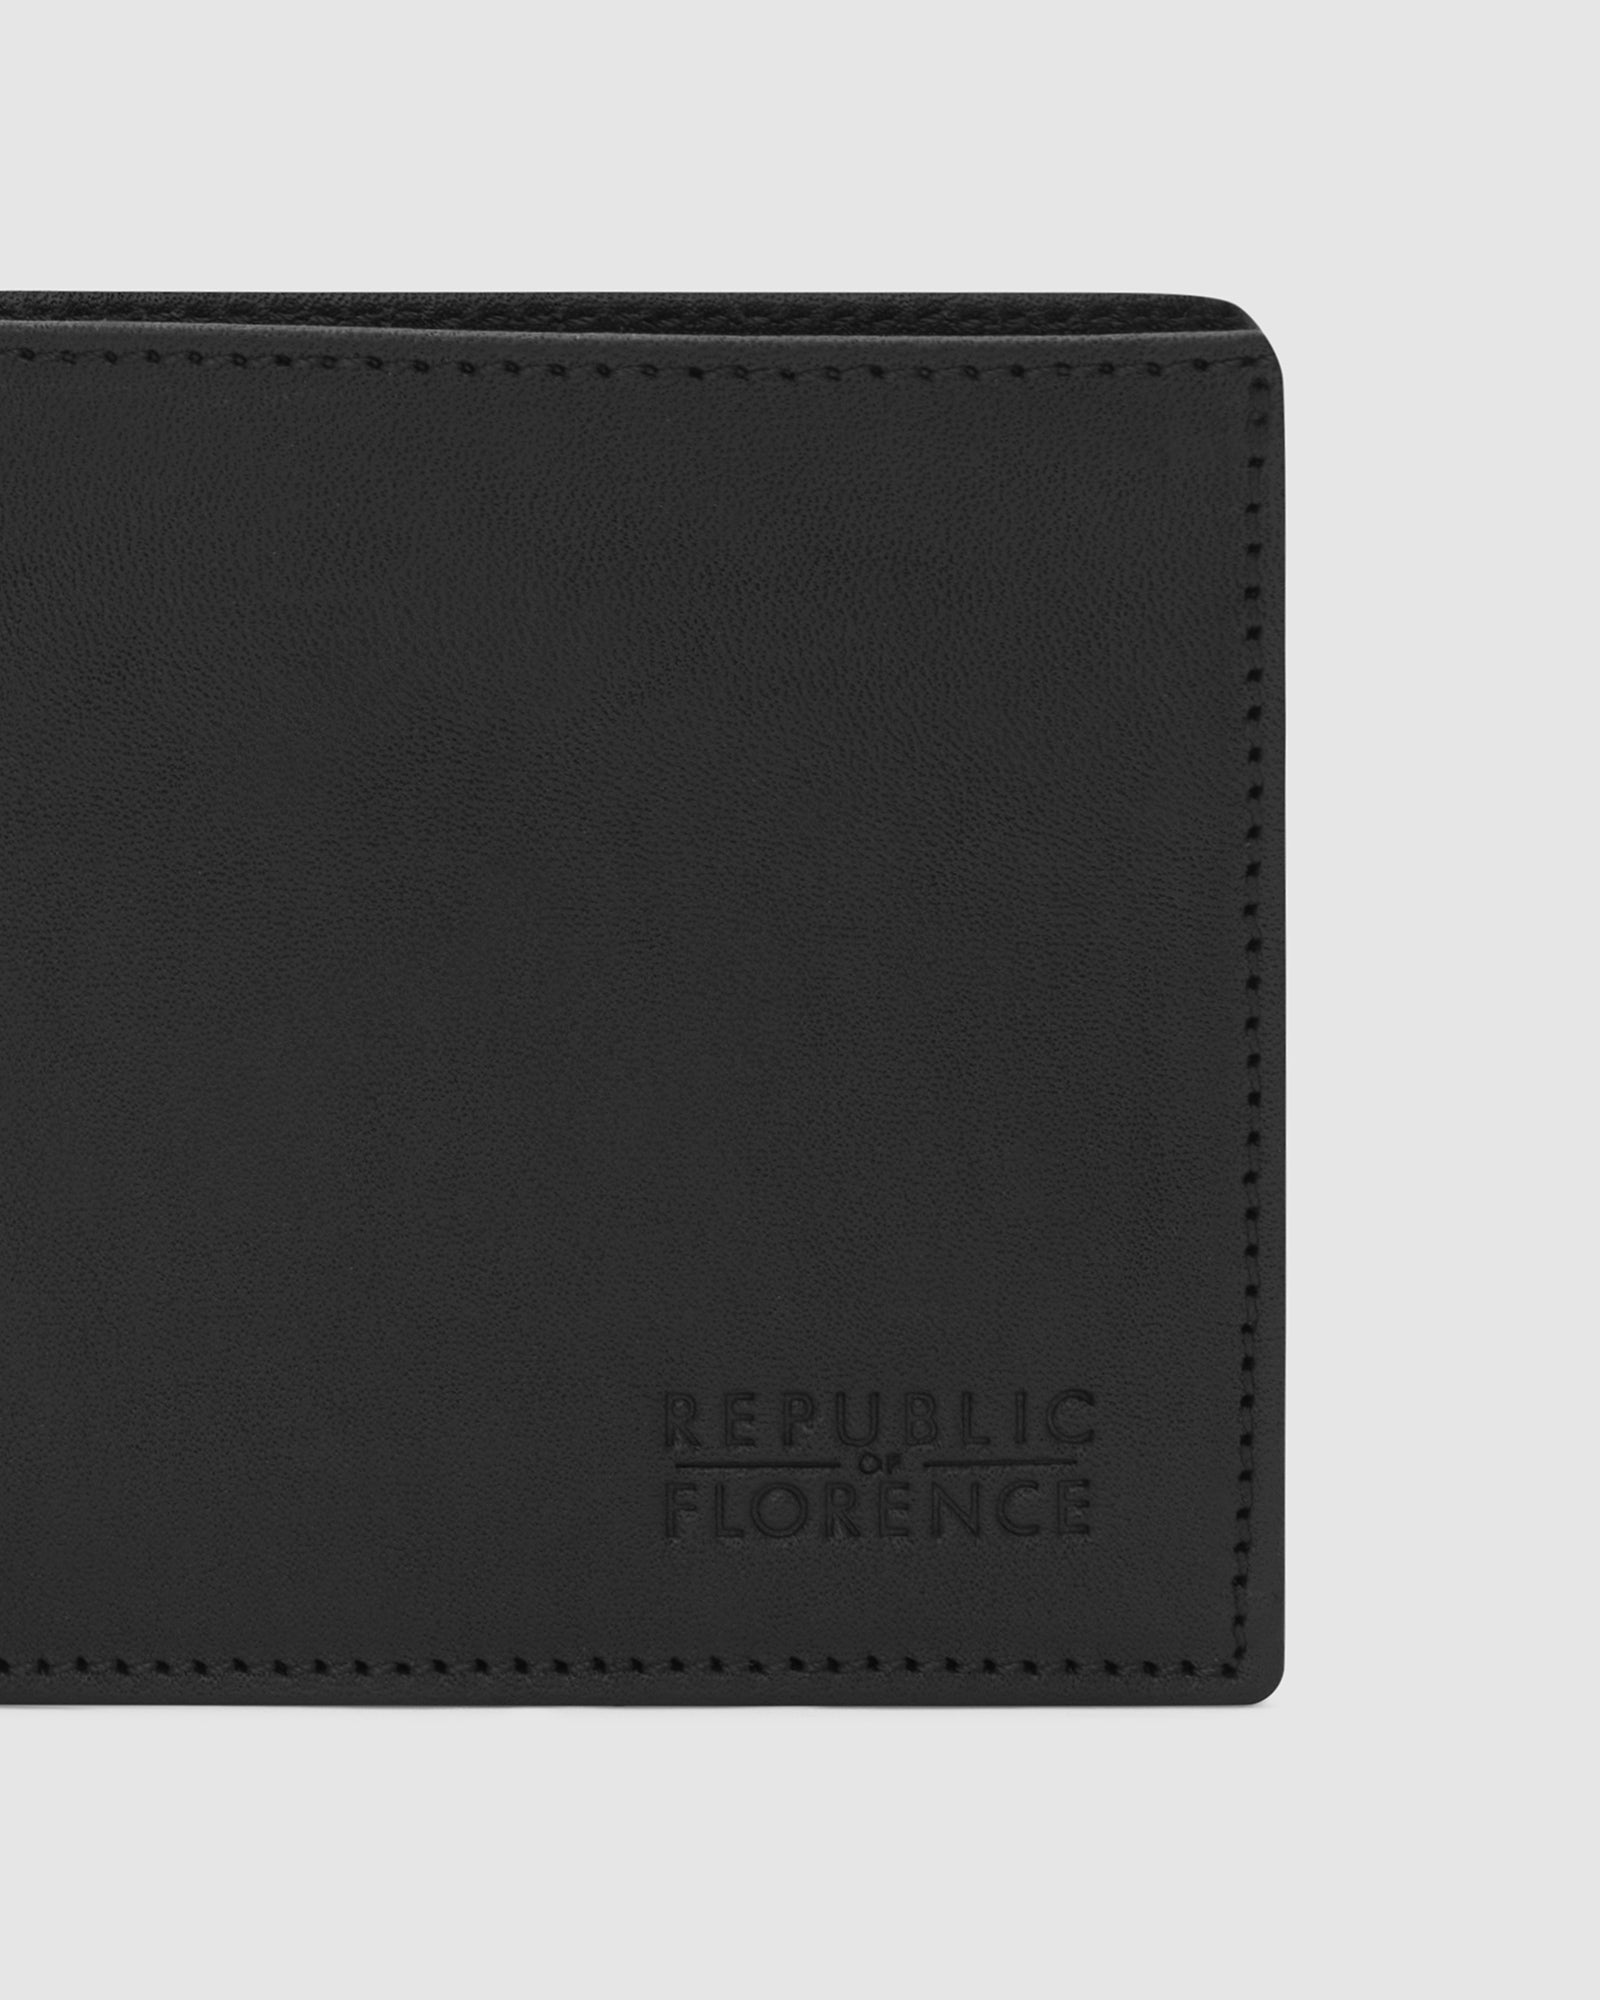 Bellini Black - Bifold Leather Wallet